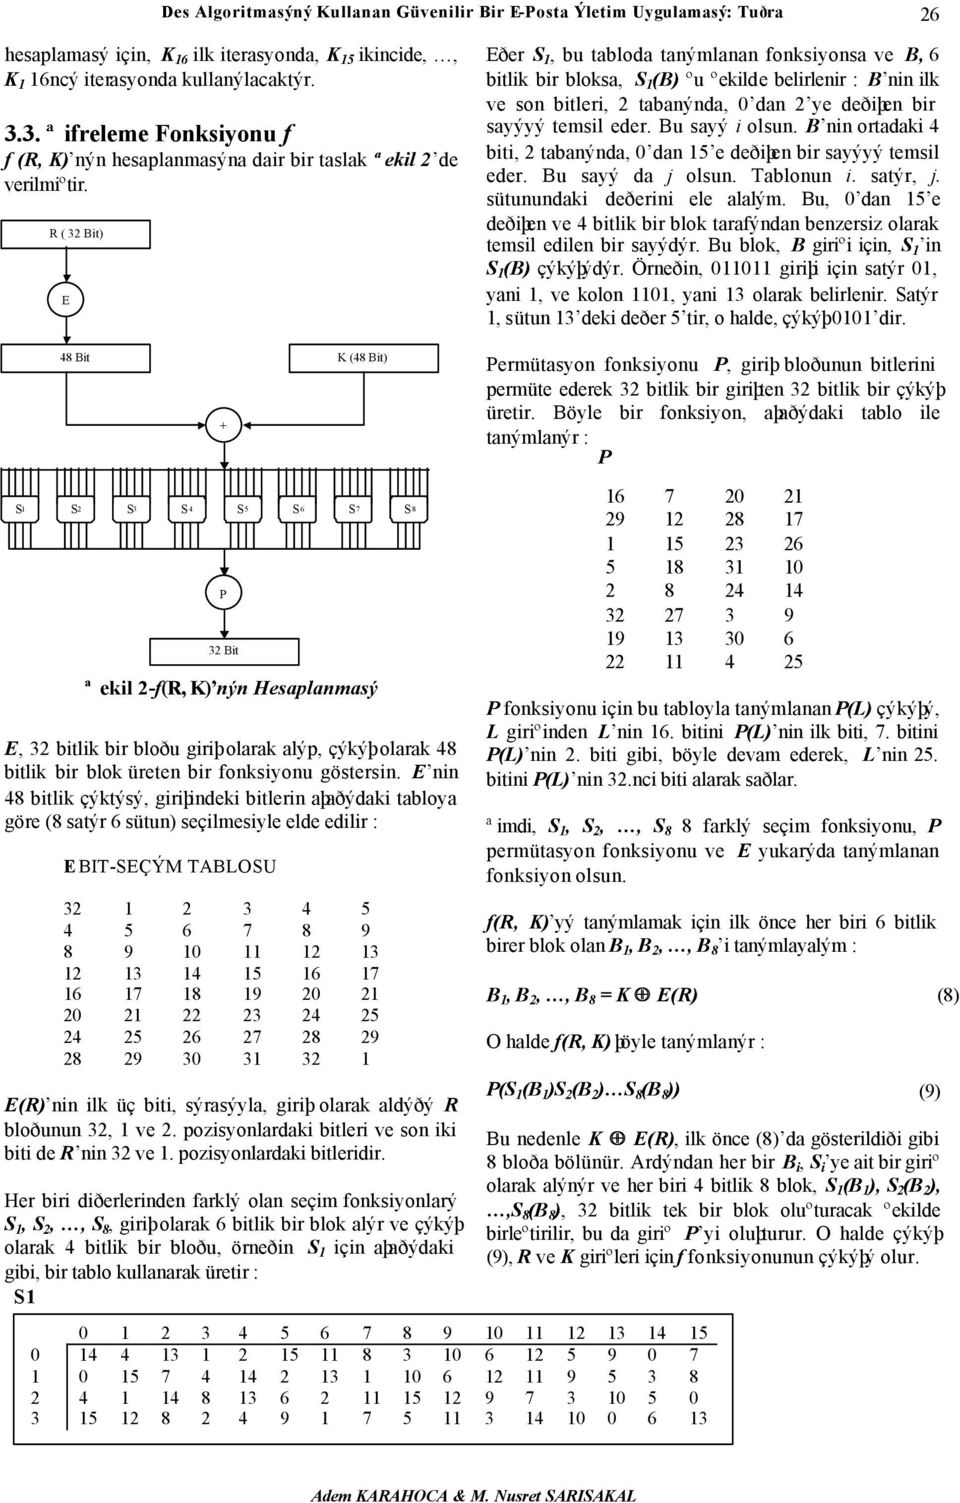 R ( 32 Bit) E 48 Bit K (48 Bit) + Eðer S 1, bu tabloda tanýmlanan fonksiyonsa ve B, 6 bitlik bir bloksa, S 1 (B) ºu ºekilde belirlenir : B nin ilk ve son bitleri, 2 tabanýnda, 0 dan 2 ye deðiþen bir